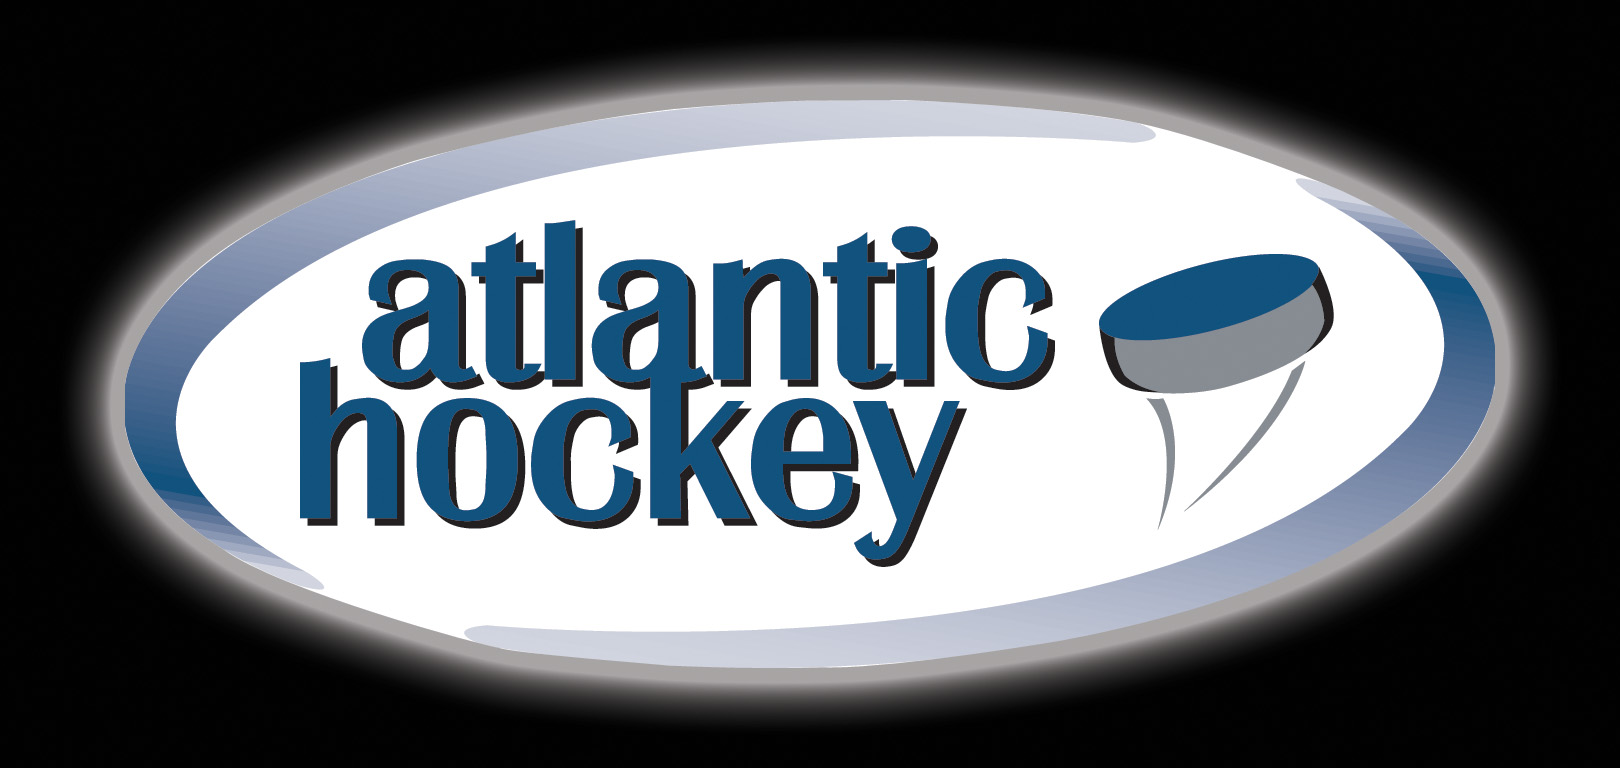 Atlantic Hockey